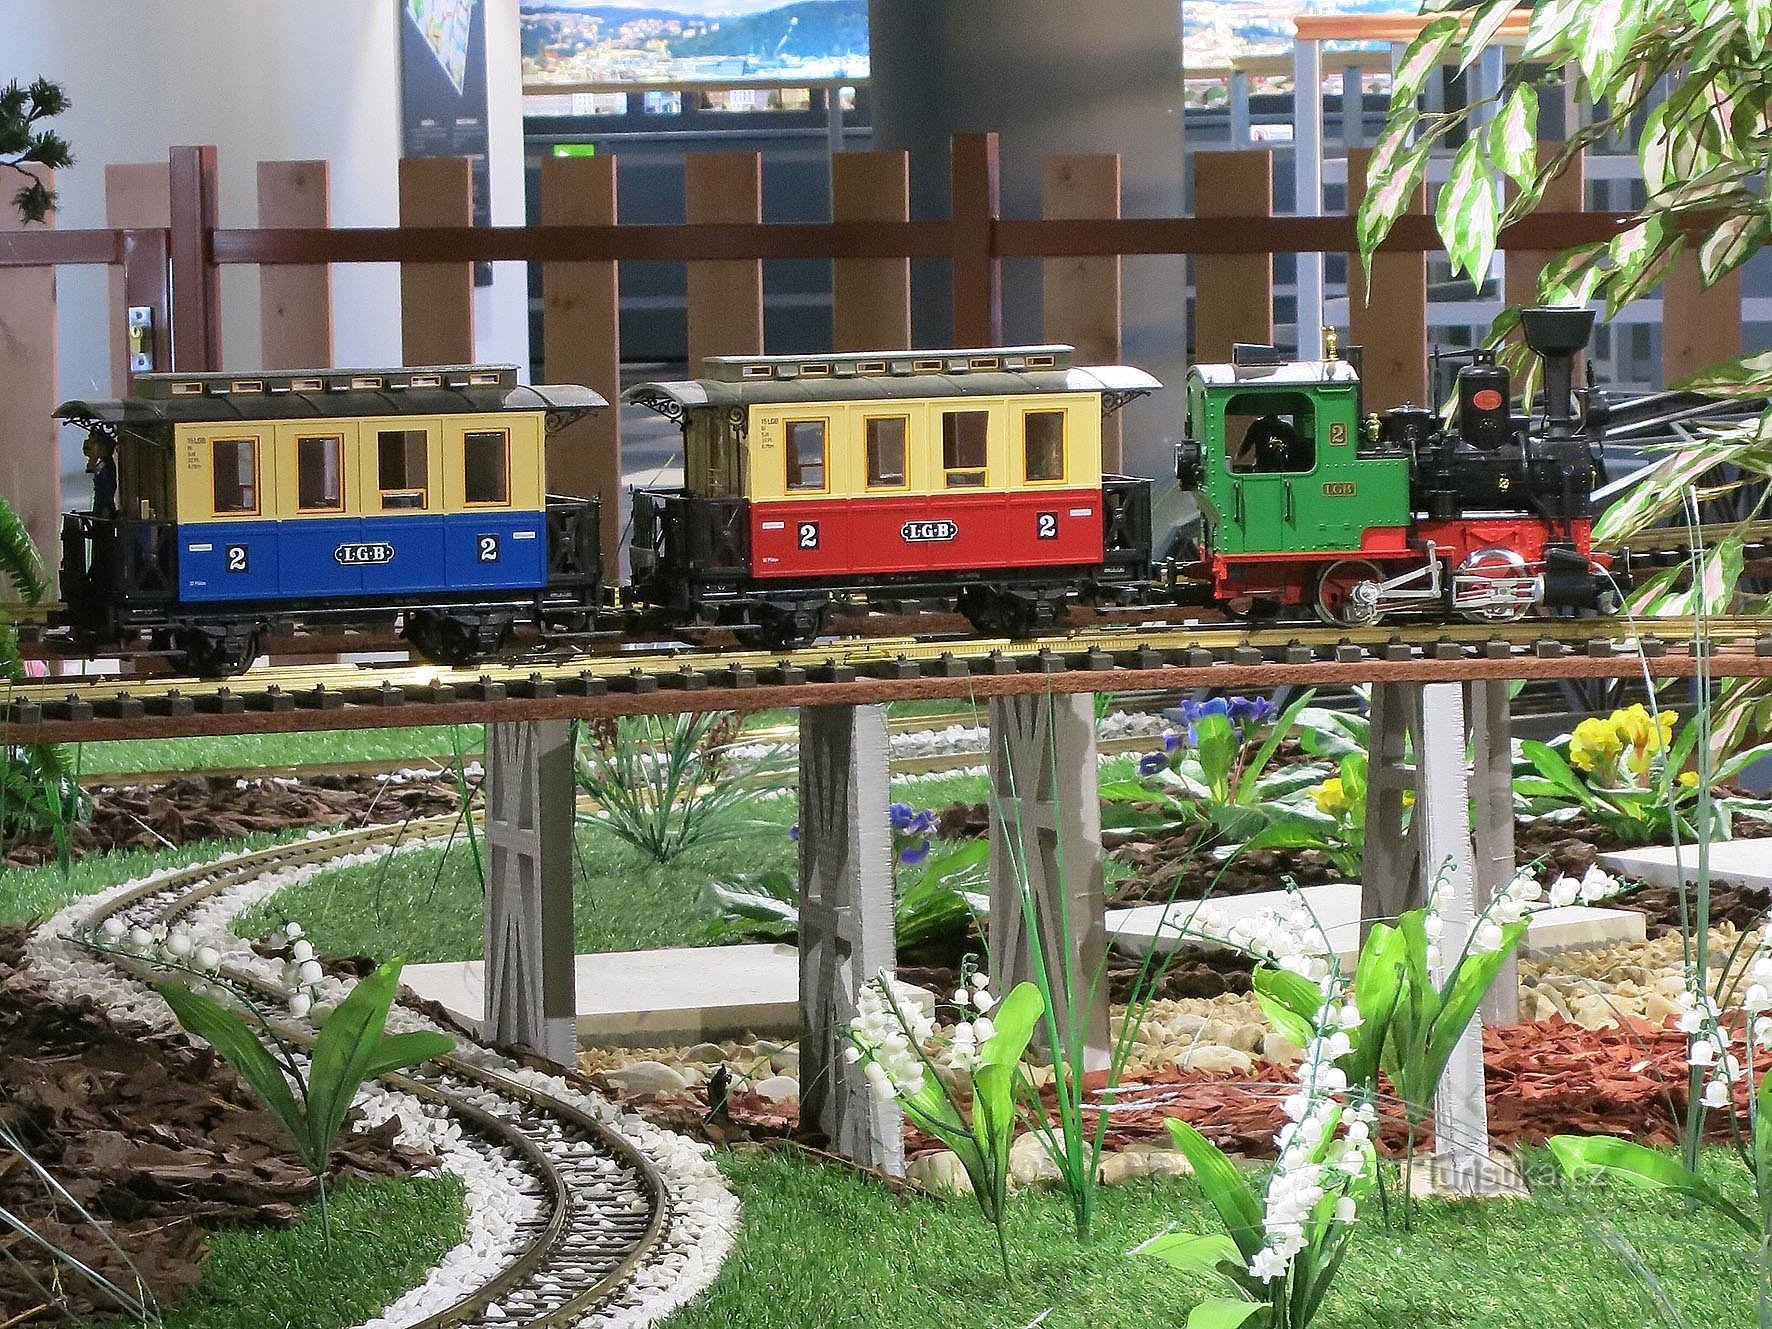 Casa de trem e museu ferroviário modelo